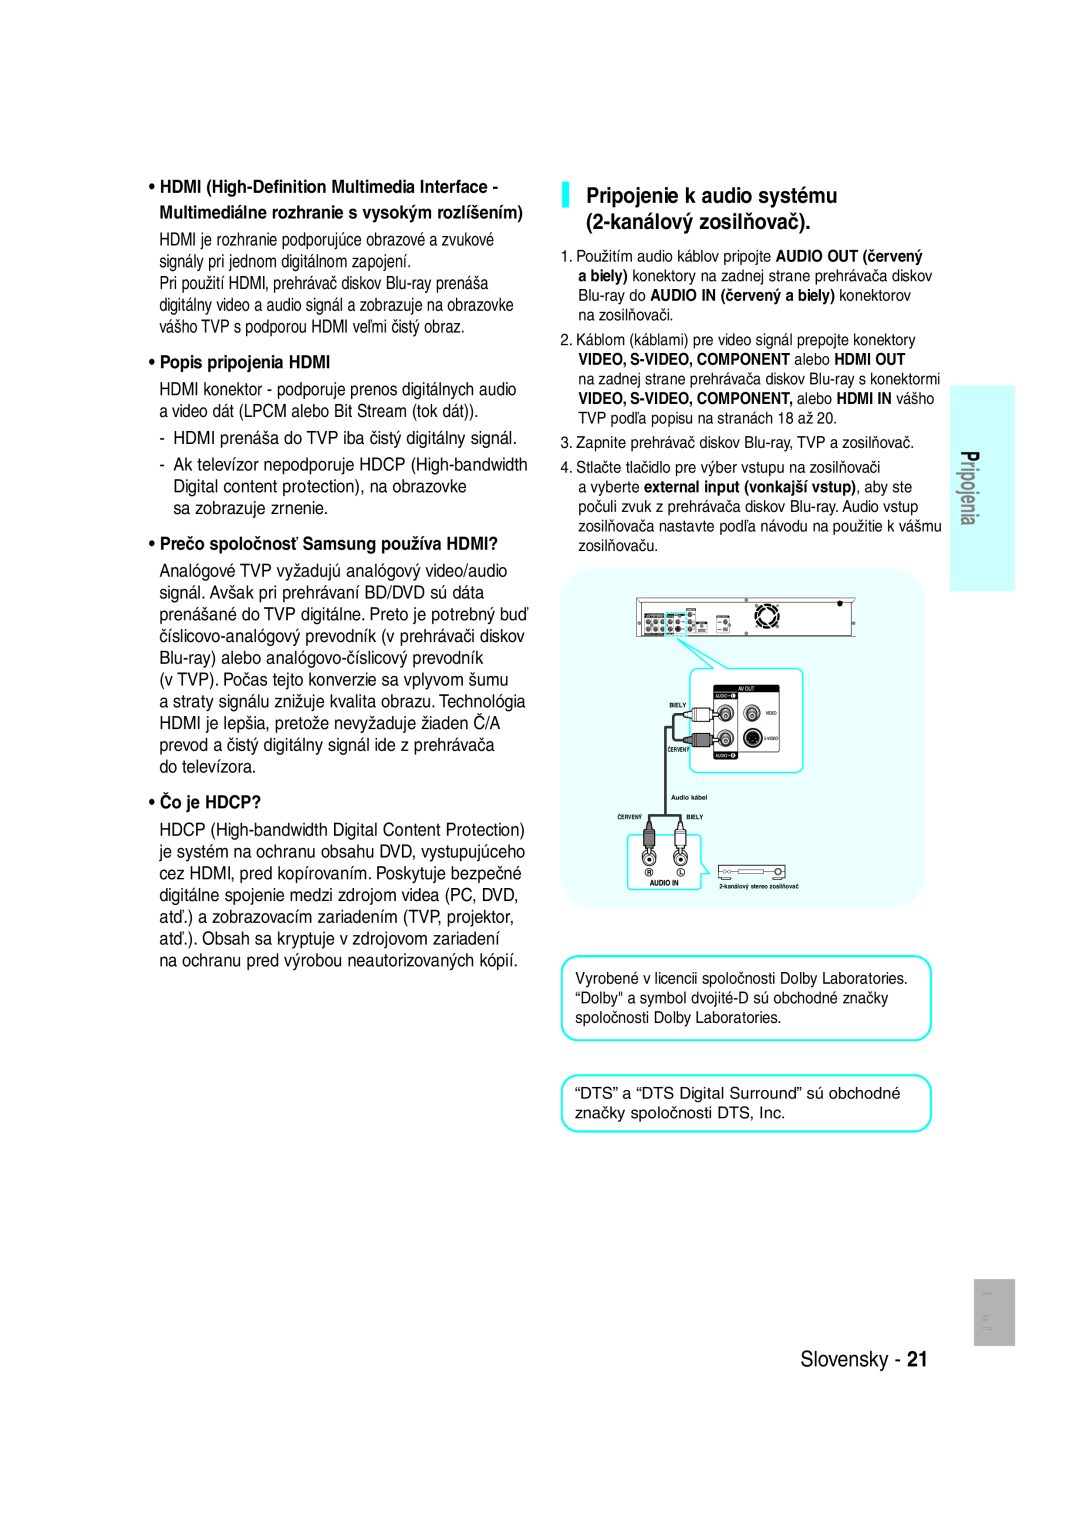 Samsung BD-P1000/XEH manual Pripojenie k audio systému, 2-kanálový zosilňovač, Popis pripojenia HDMI, sa zobrazuje zrnenie 